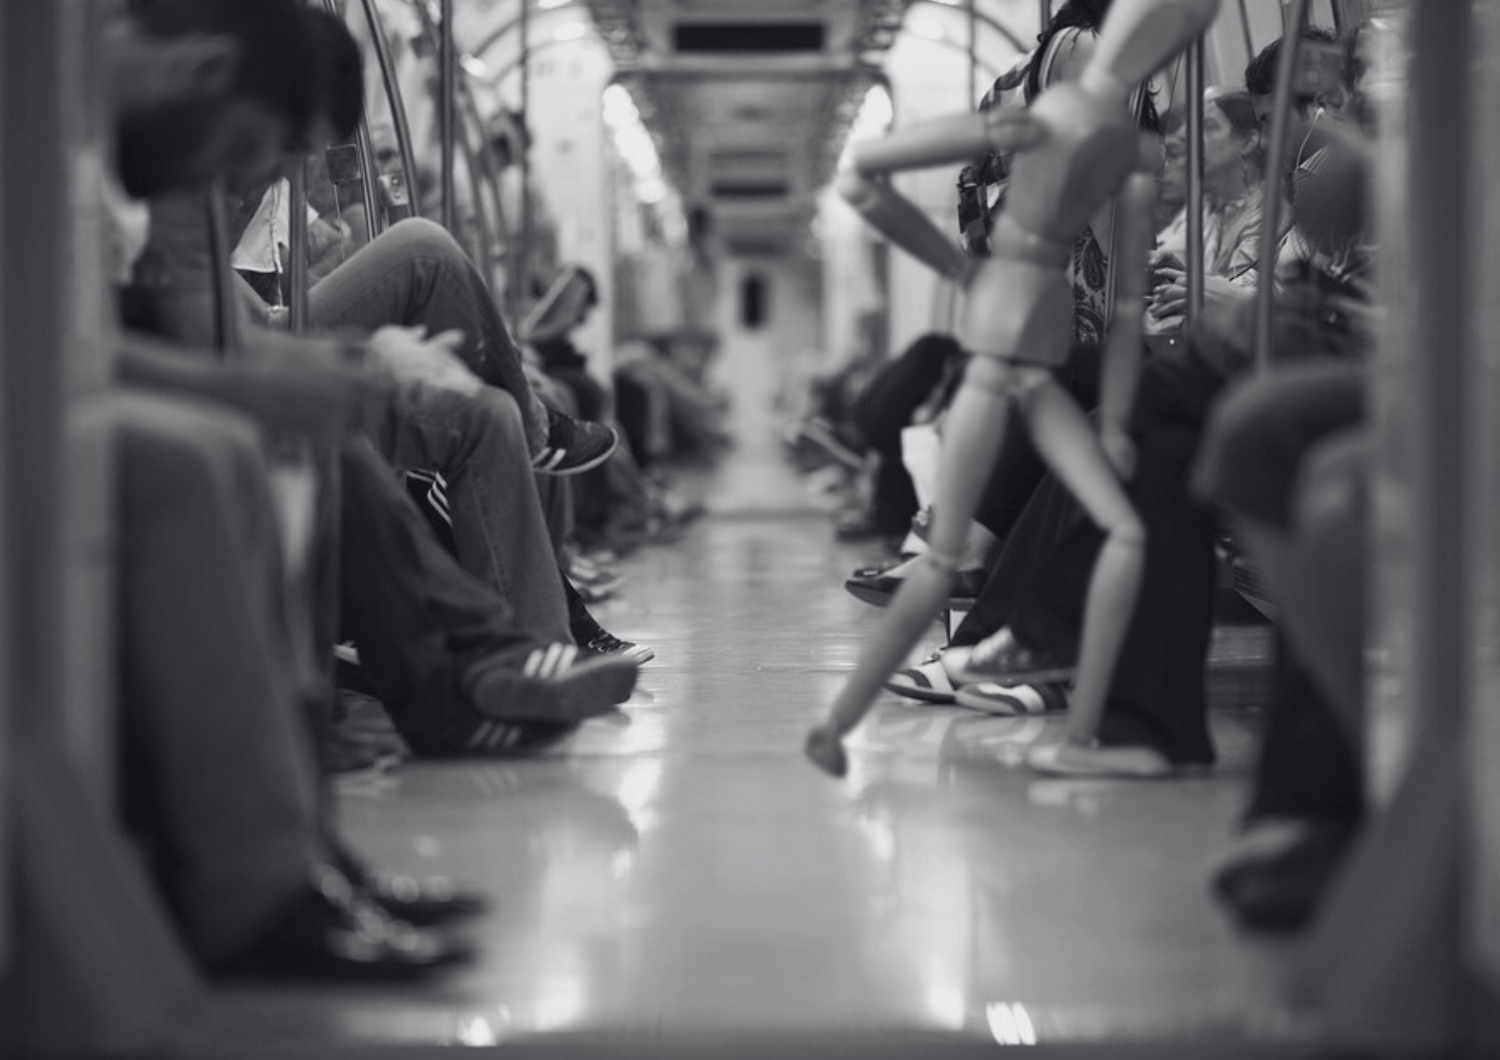 Vagón de metro en blanco y negro, maniquí de madera erguido